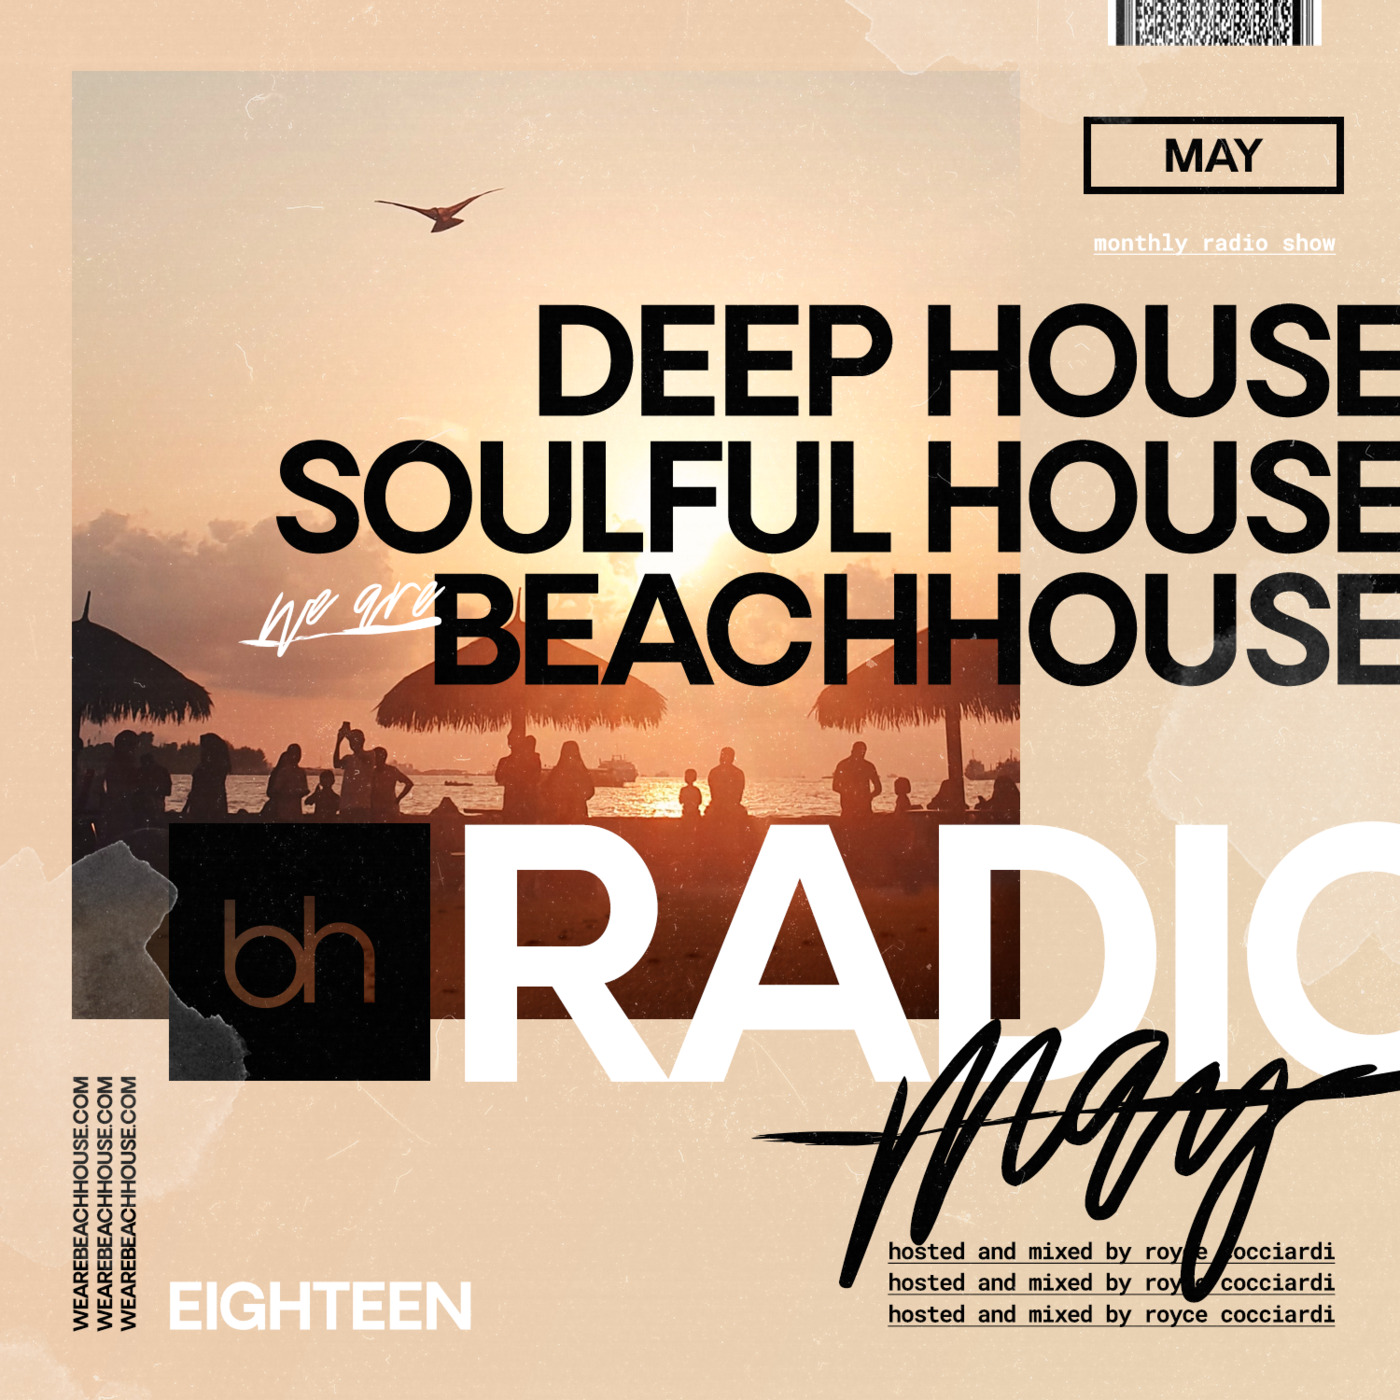 Beachhouse RADIO - May 2021 - Episode 18